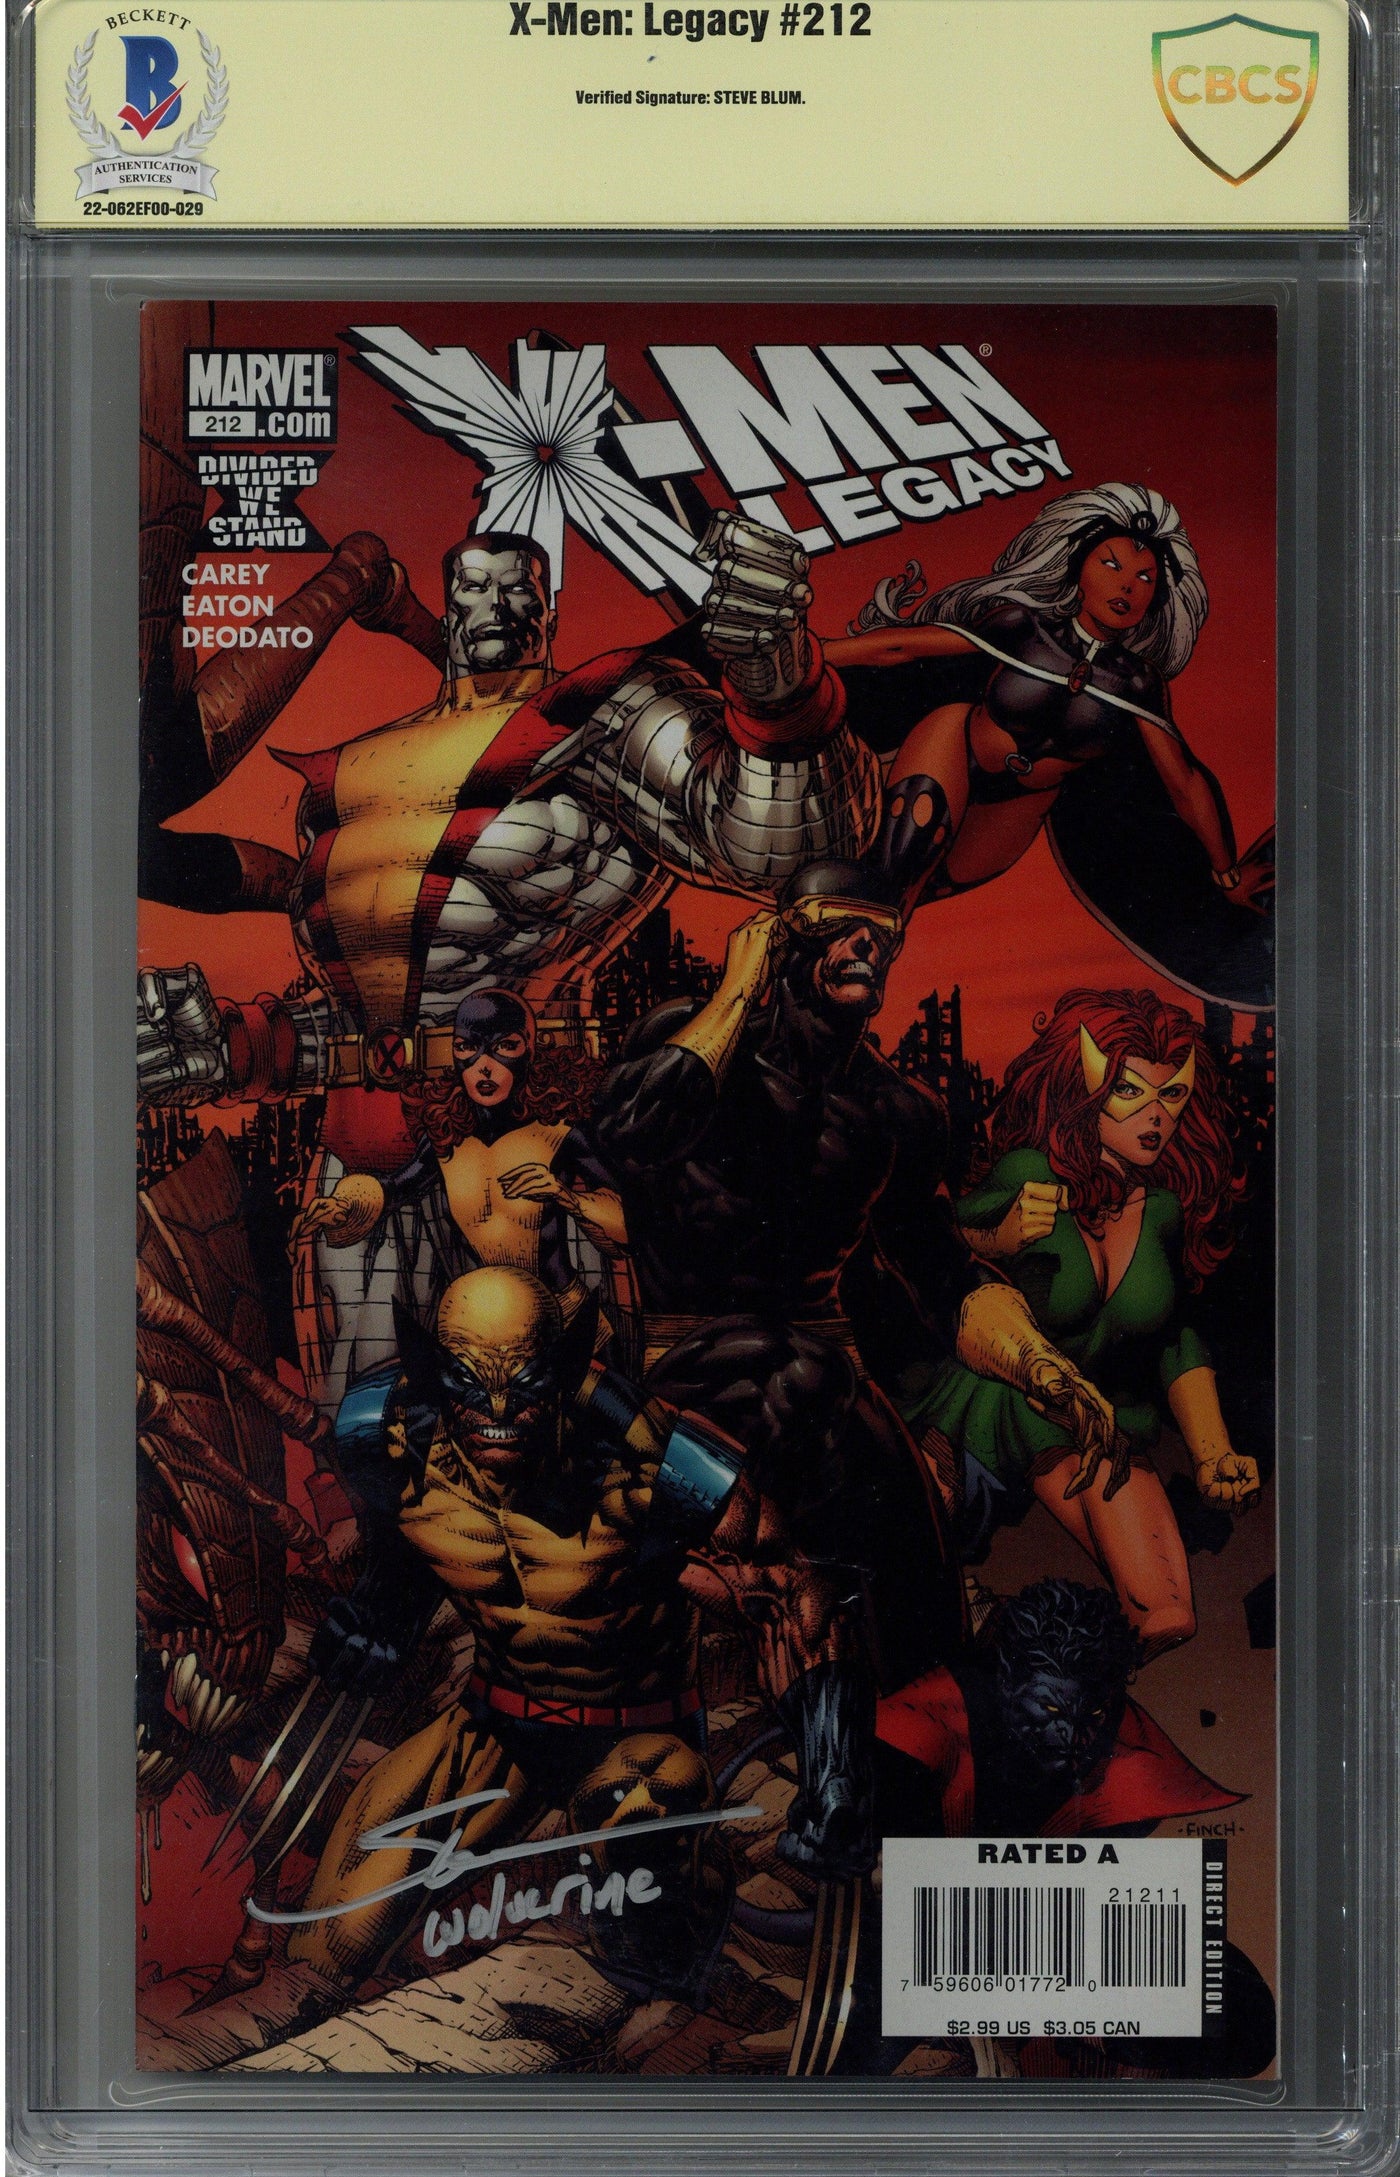 Steve Blum Signed X-Men: Legacy #212 Comic Book CBCS - Wolverine Voice Actor